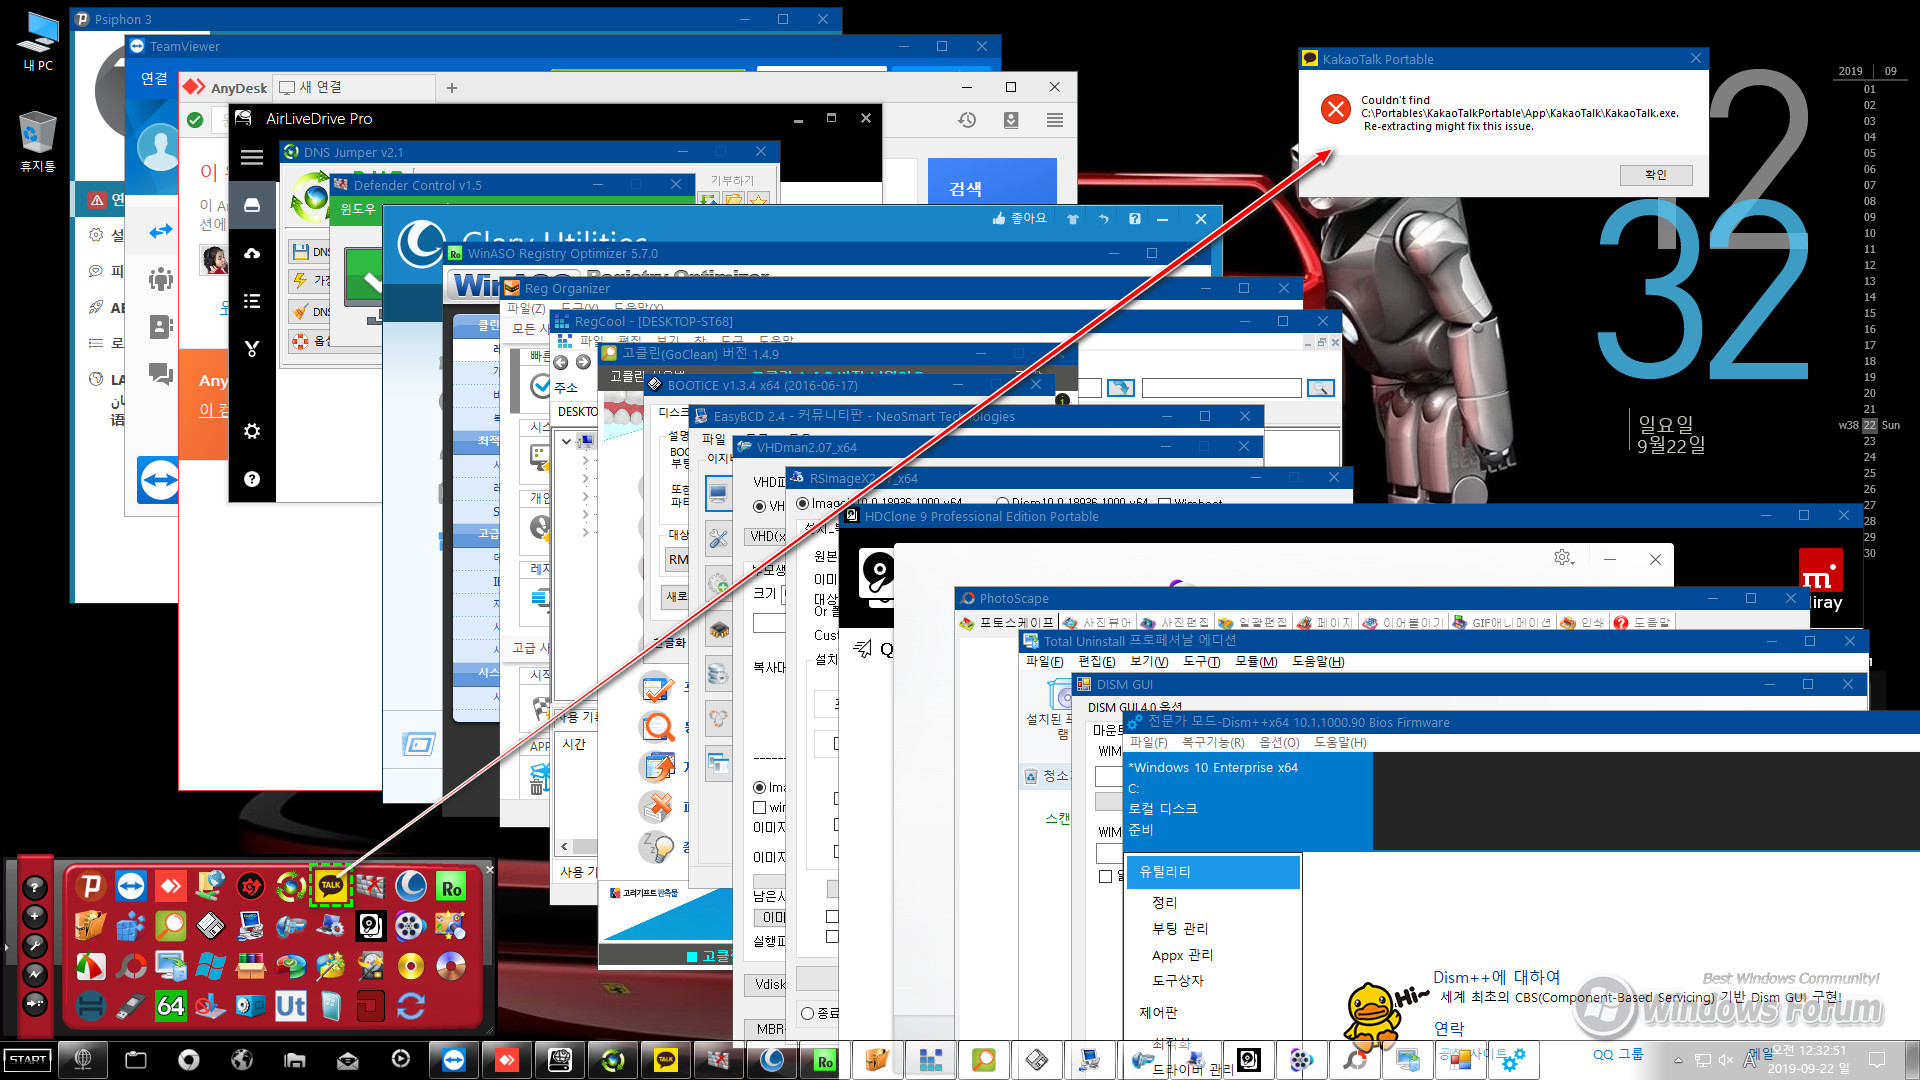 Windows 10 Enterprise ST68_0009-01.jpg